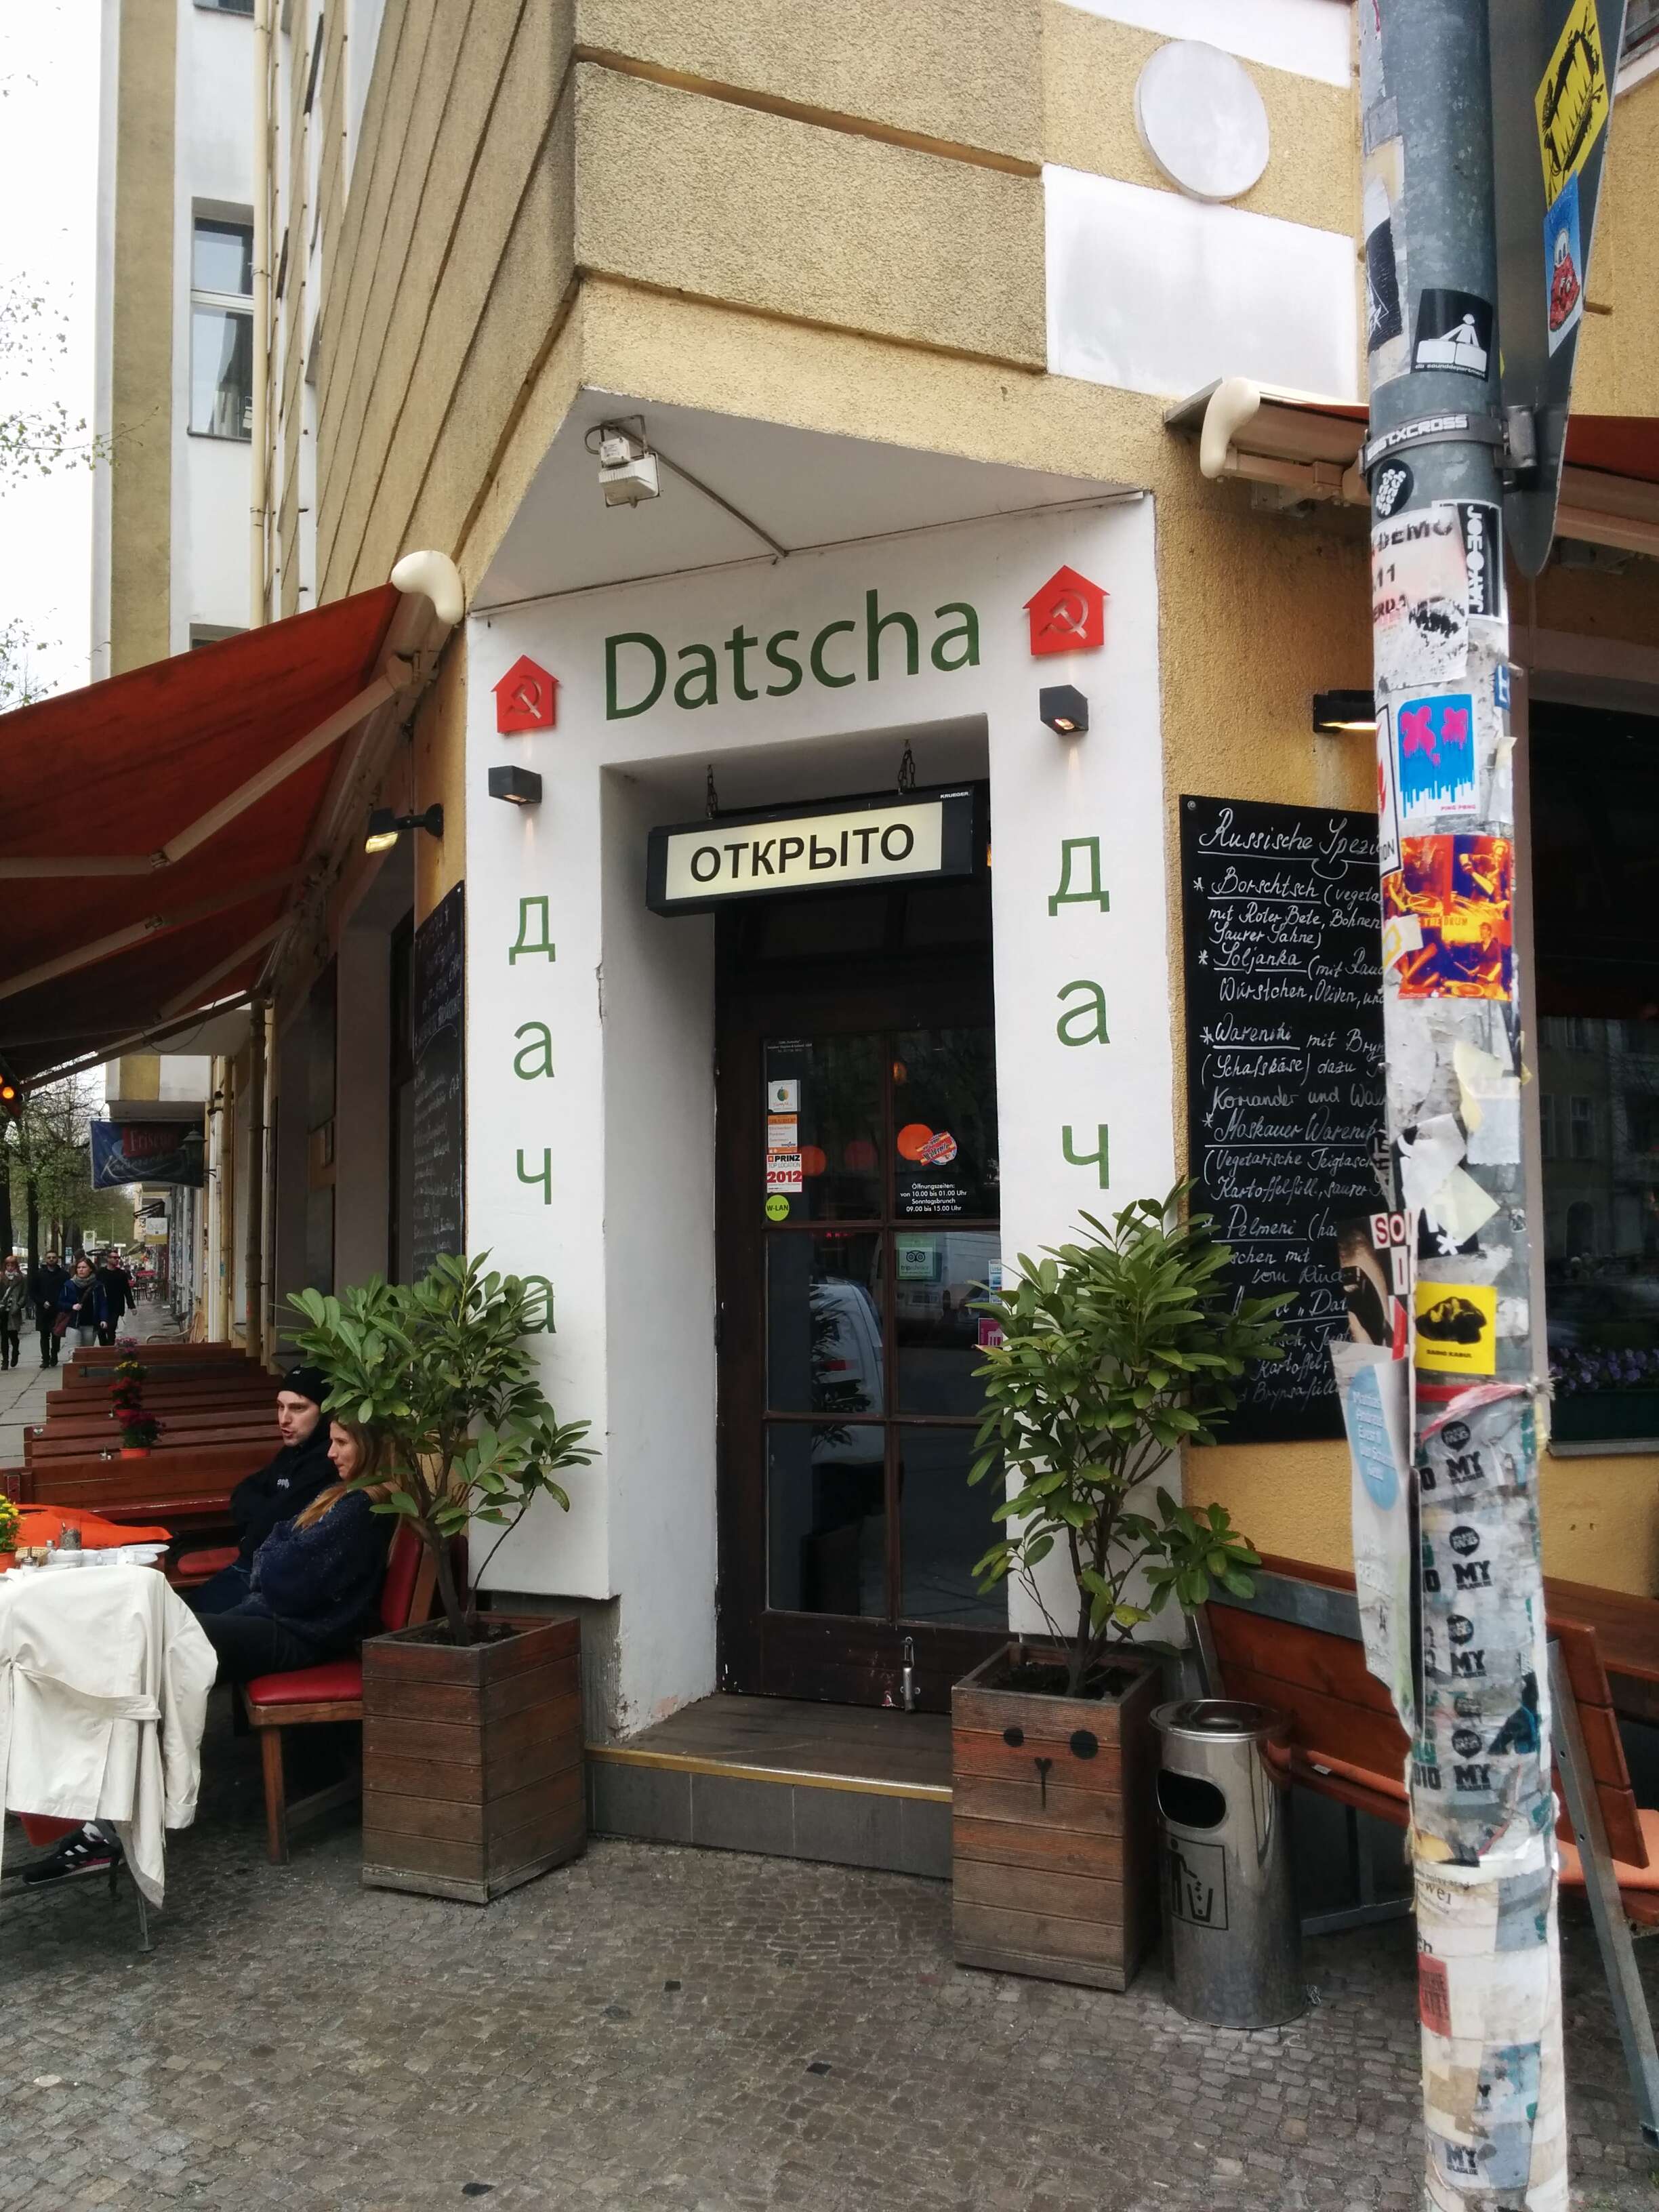 Exterior of Datscha